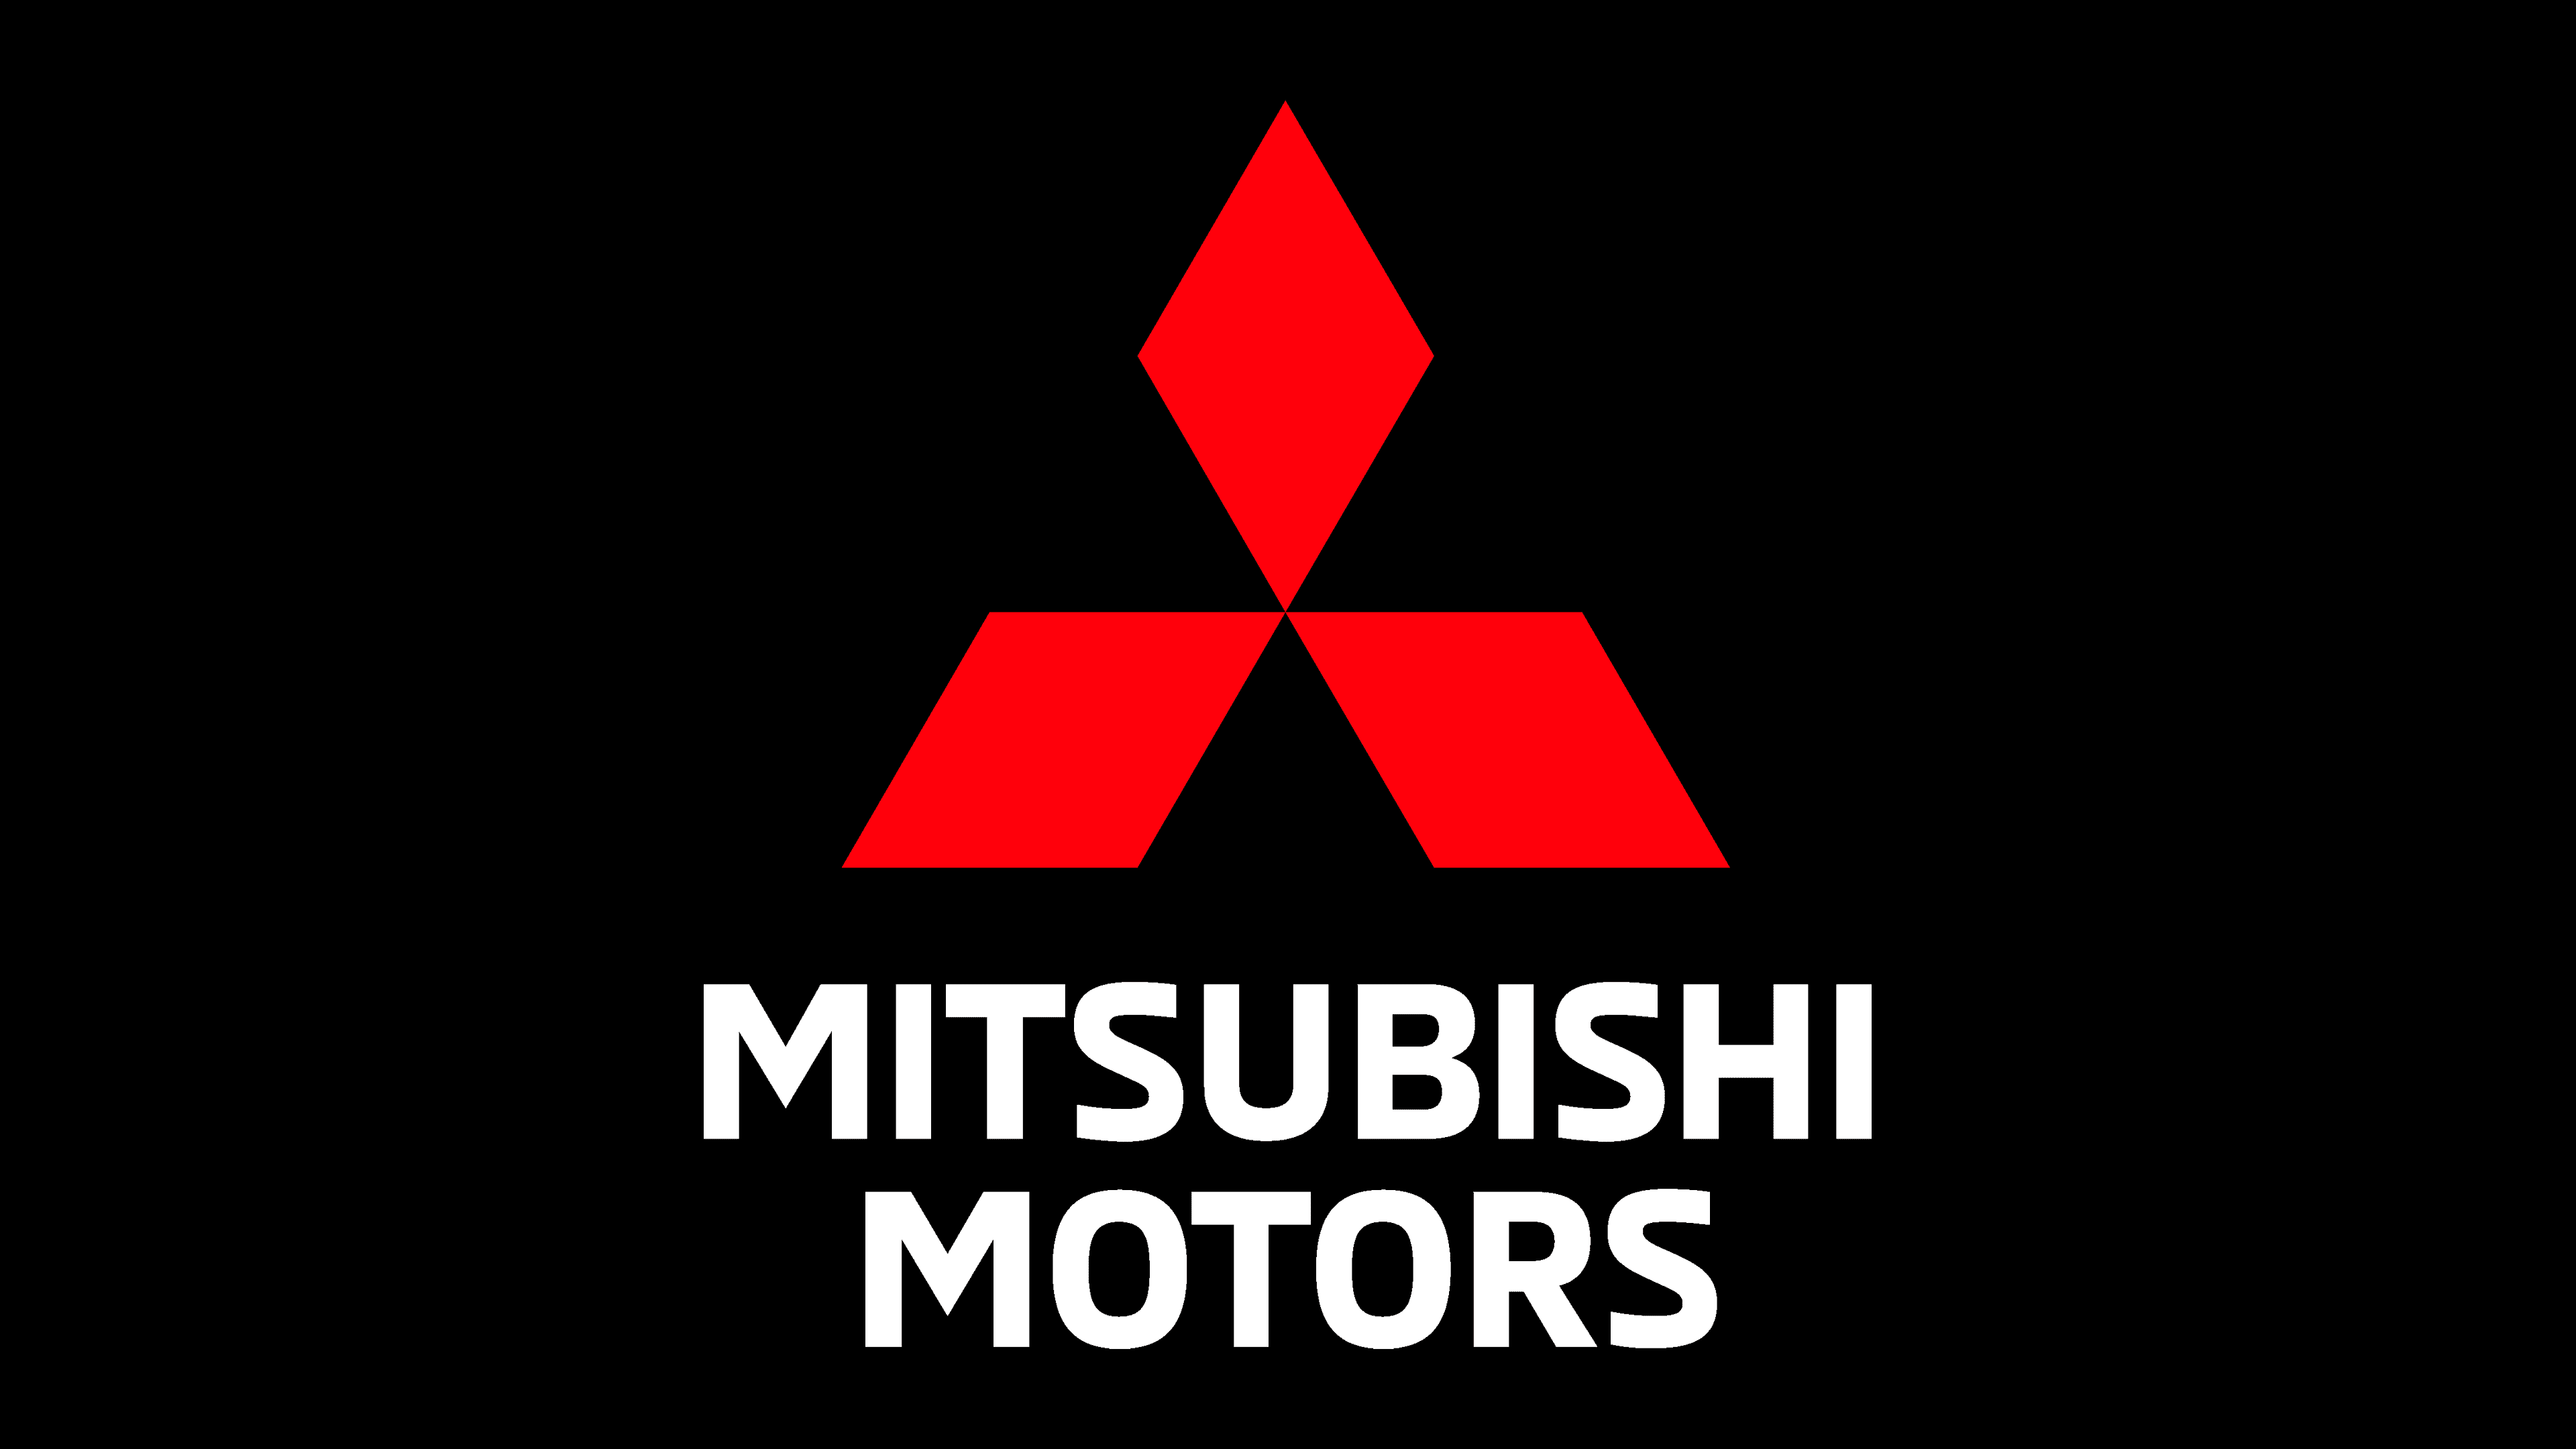 Převléknout se skládka Stabilní logo mitsubishi motors png význam ...